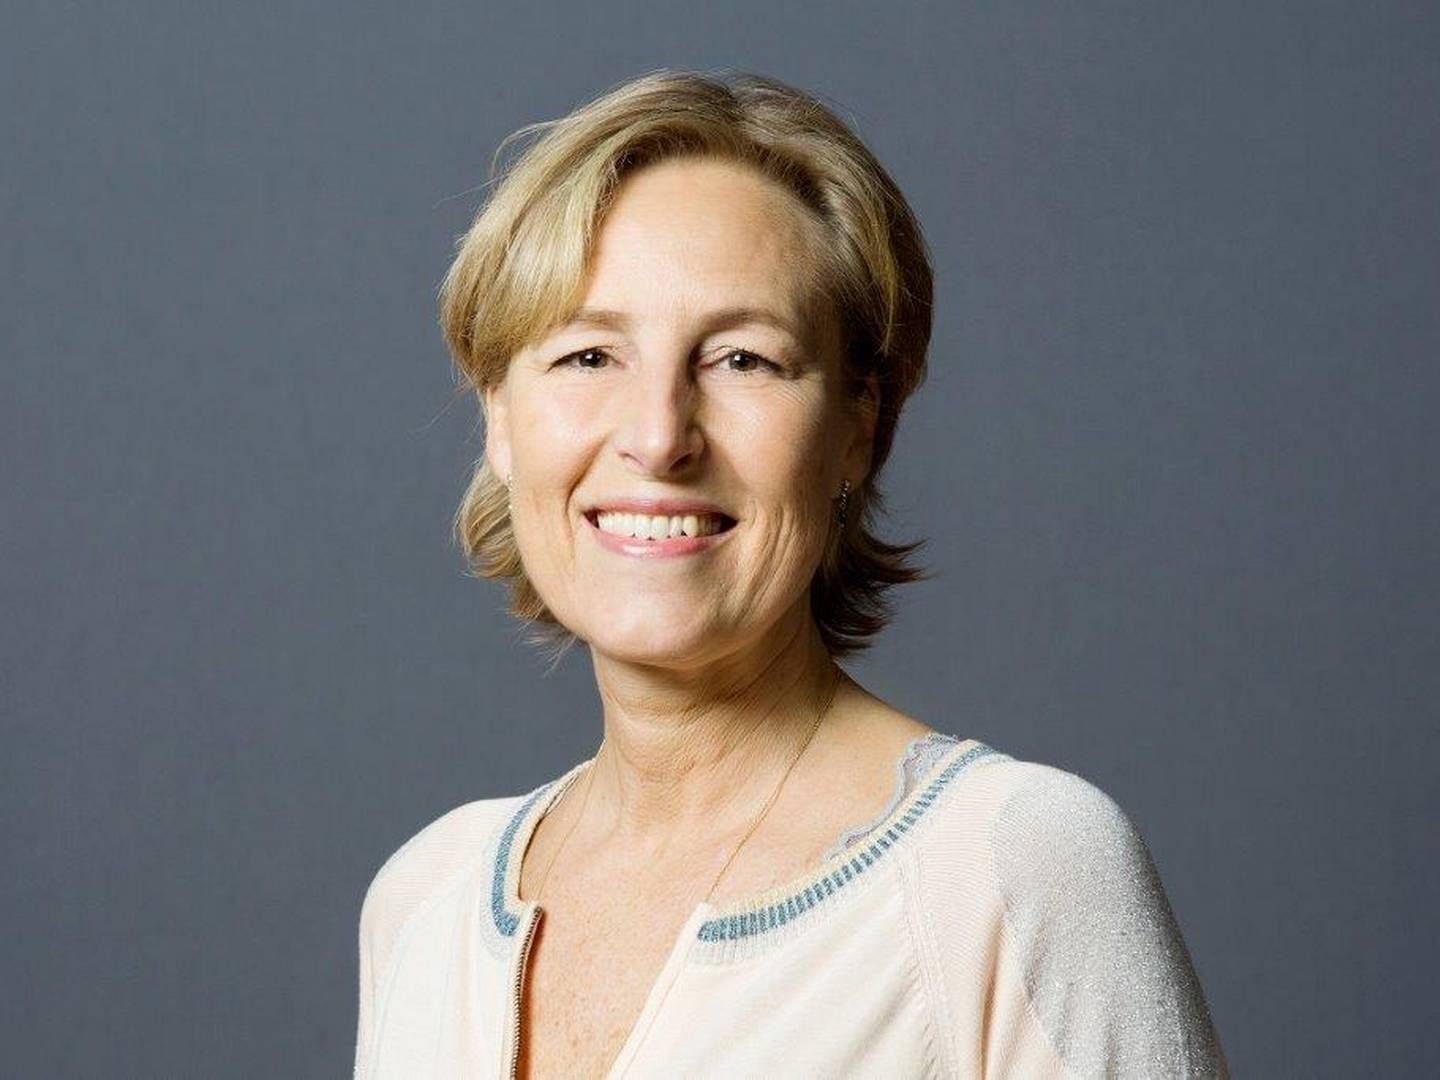 Dorrit Brandt er netop blevet formand for Finansforbundet, men hun vil gerne vente med at præsentere de helt store visioner. | Foto: Pressebillede Nordea